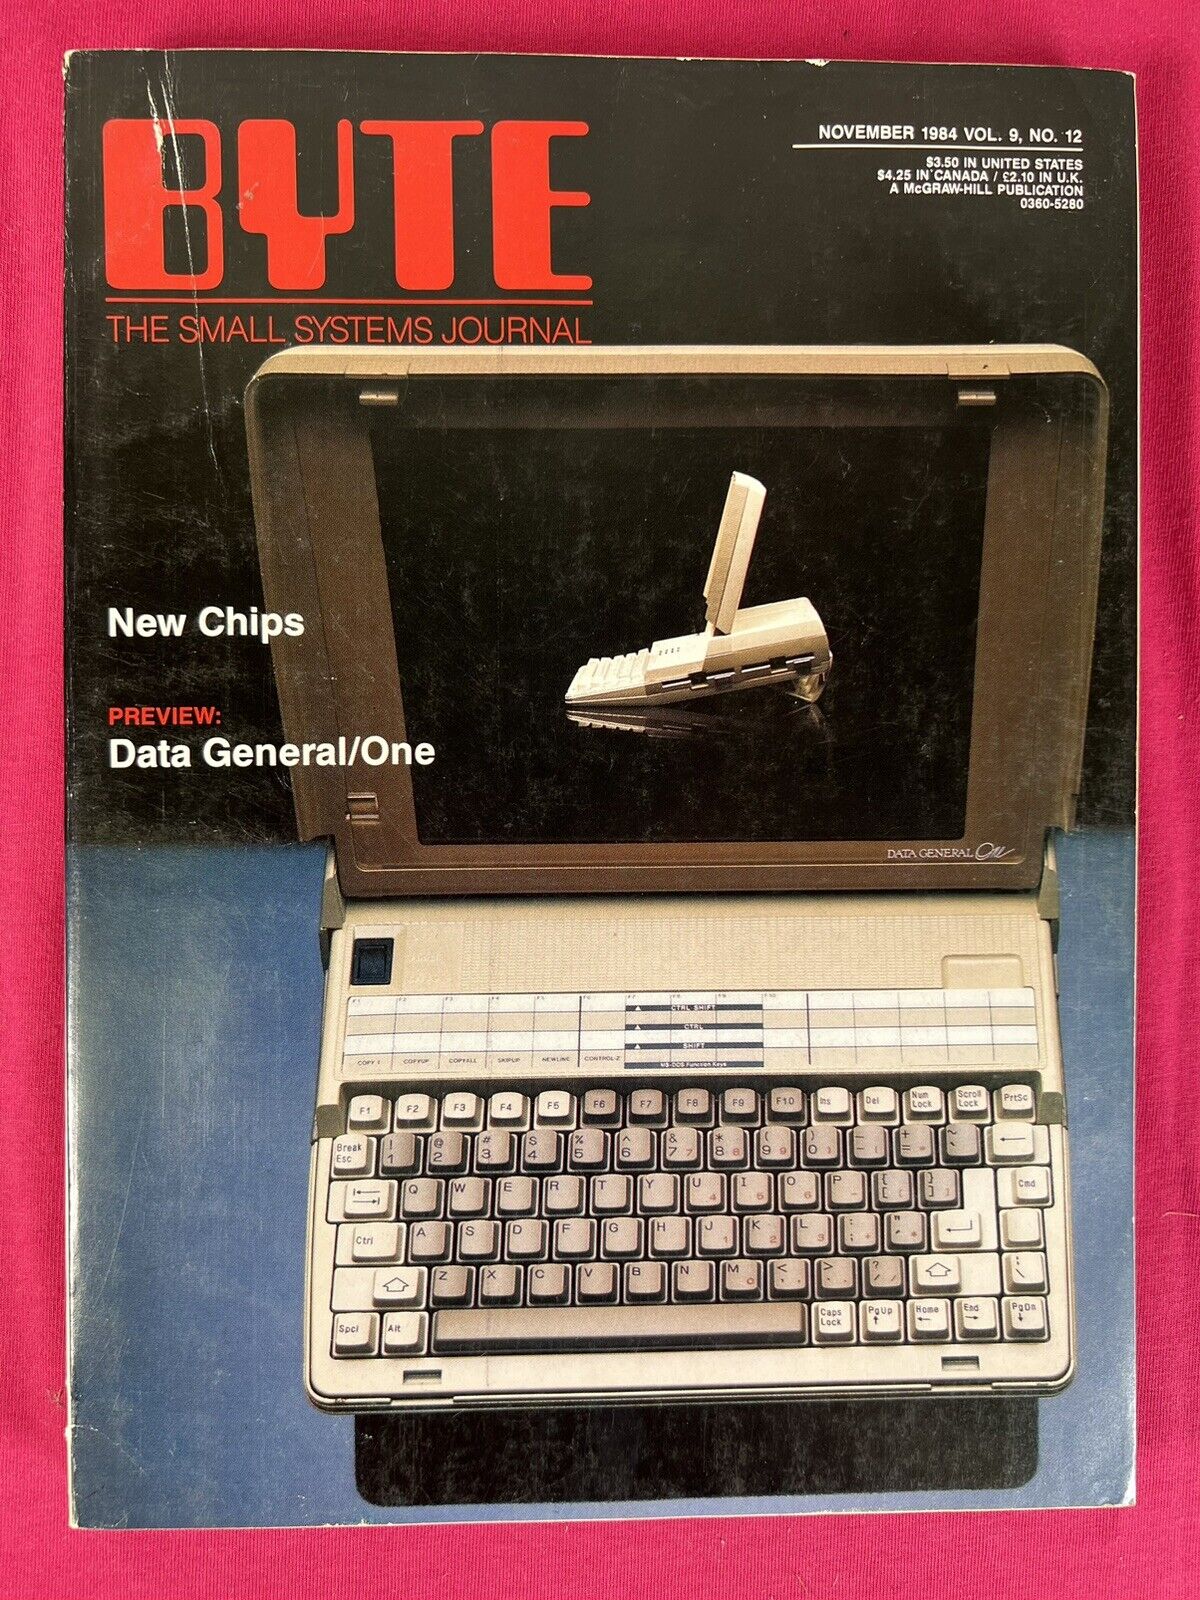 Nov 1984 BYTE MAGAZINE v9 #12 - New Chips, Data General/ One, Apple Macintosh Ad